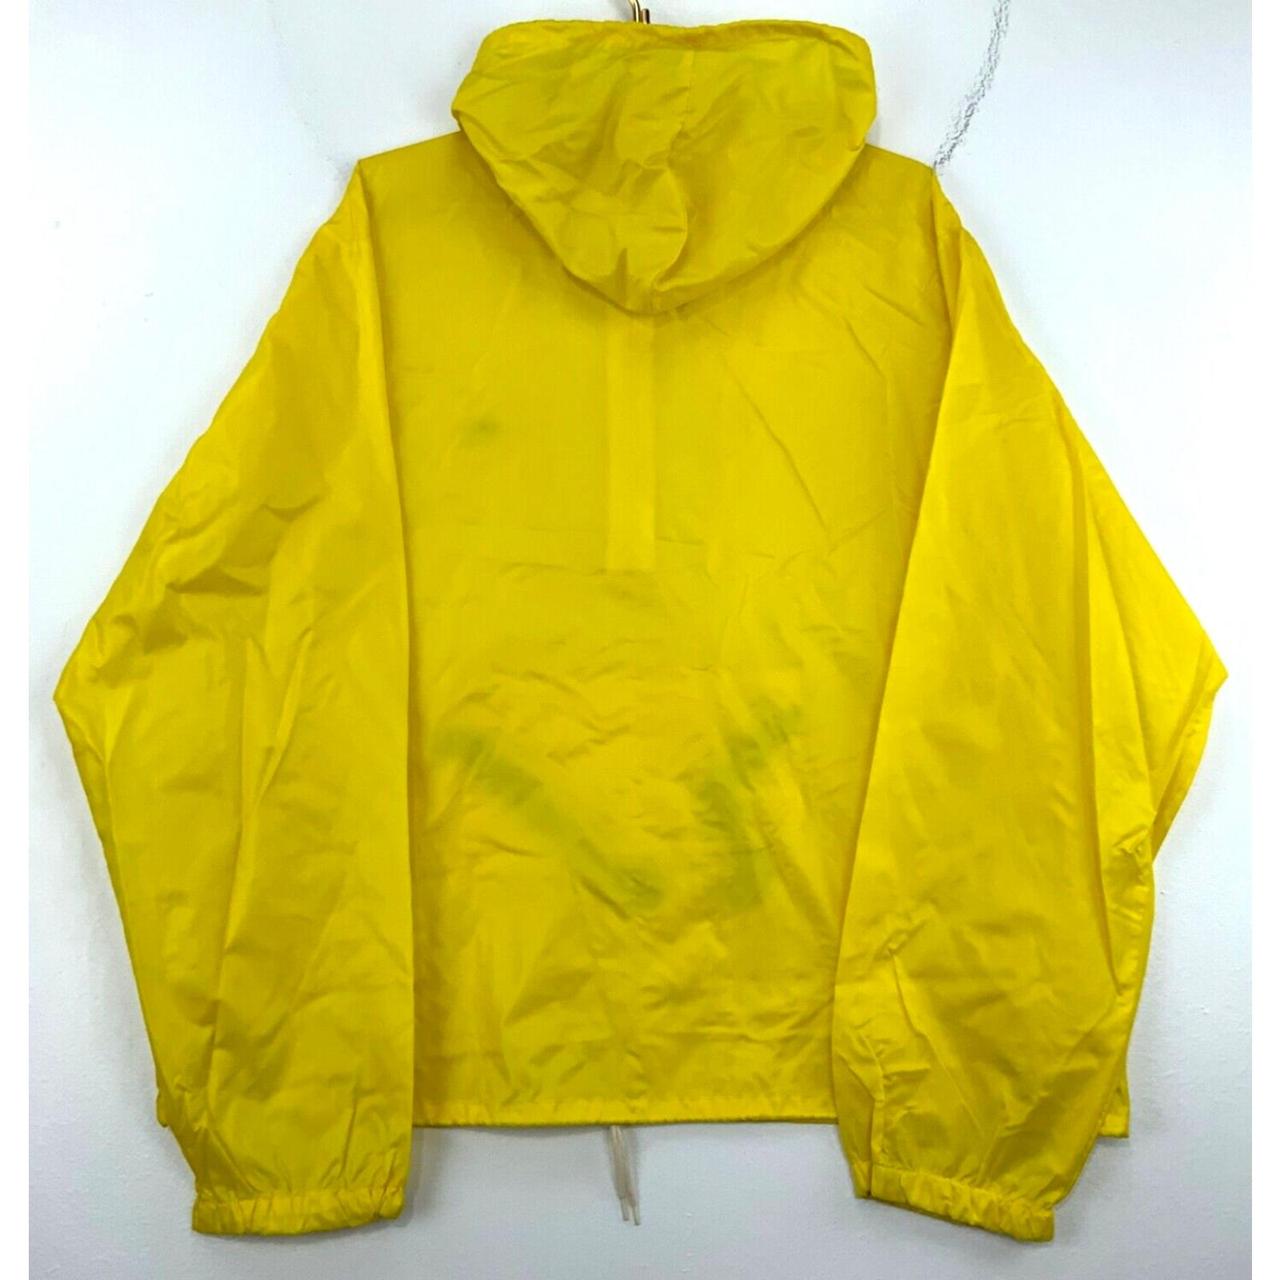 Izod Men's Yellow Sweatshirt | Depop